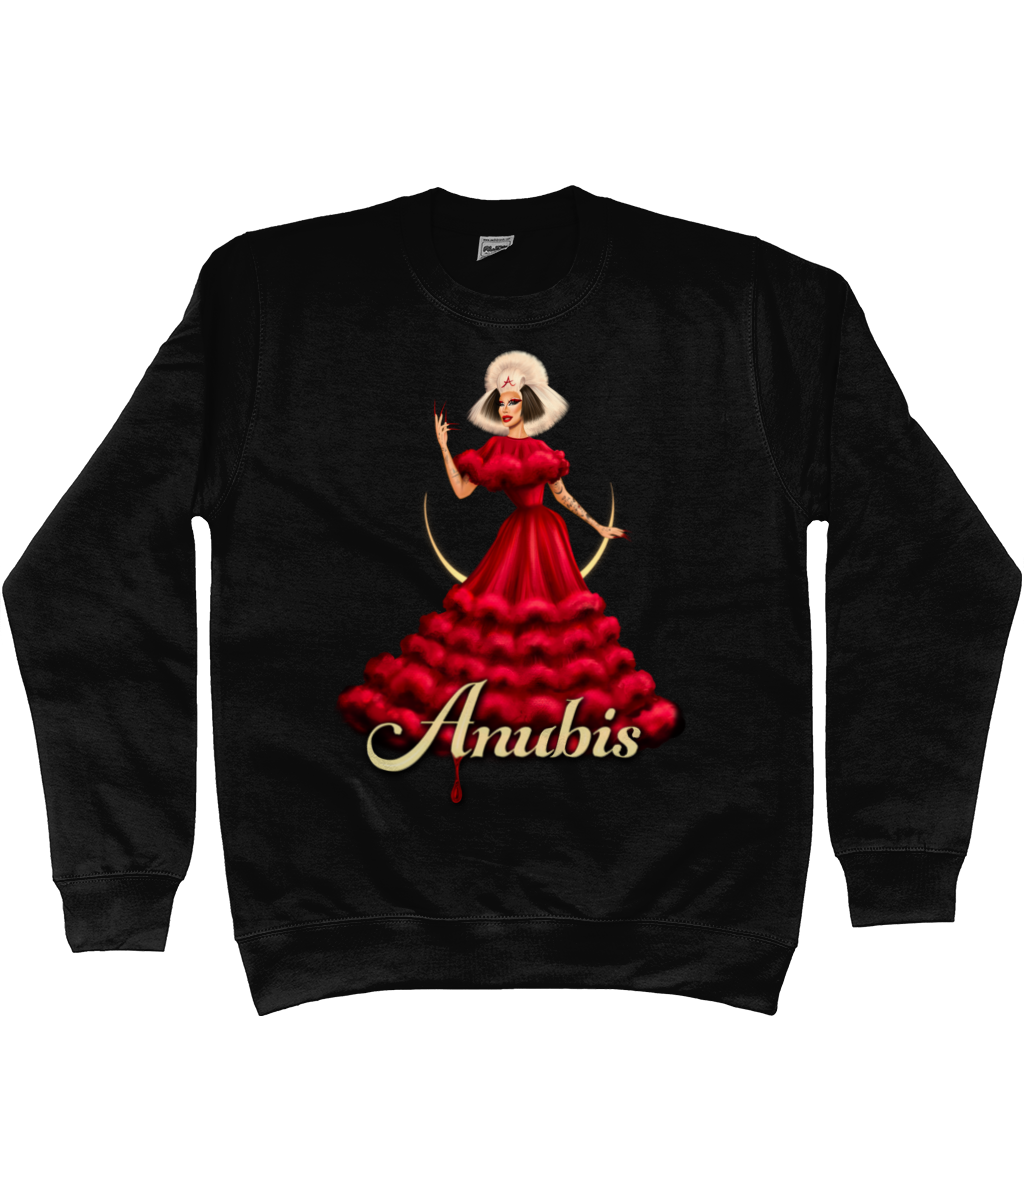 Anubis - Signature Sweatshirt